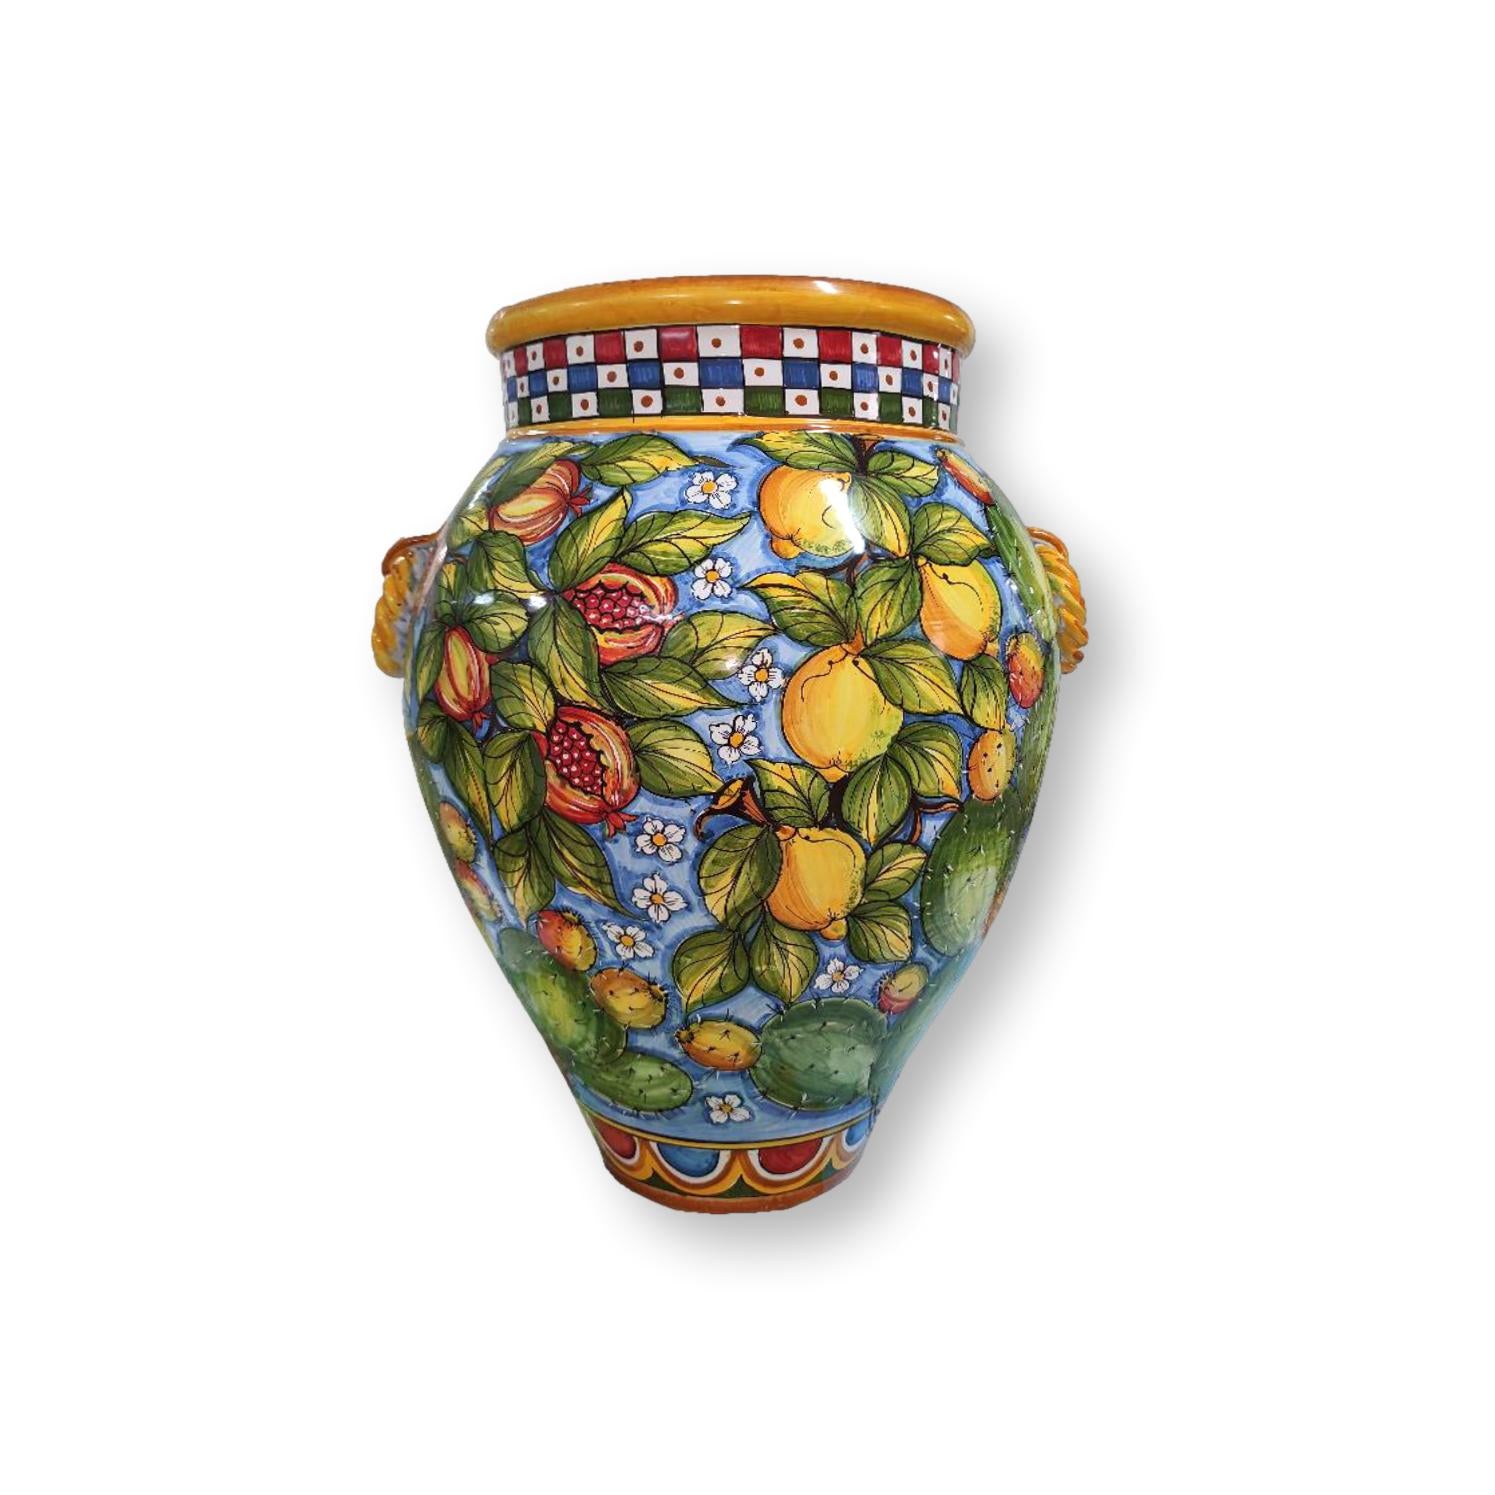 Giara in ceramica dipinta a mano - Decoro mediterraneo con frutta e fiori